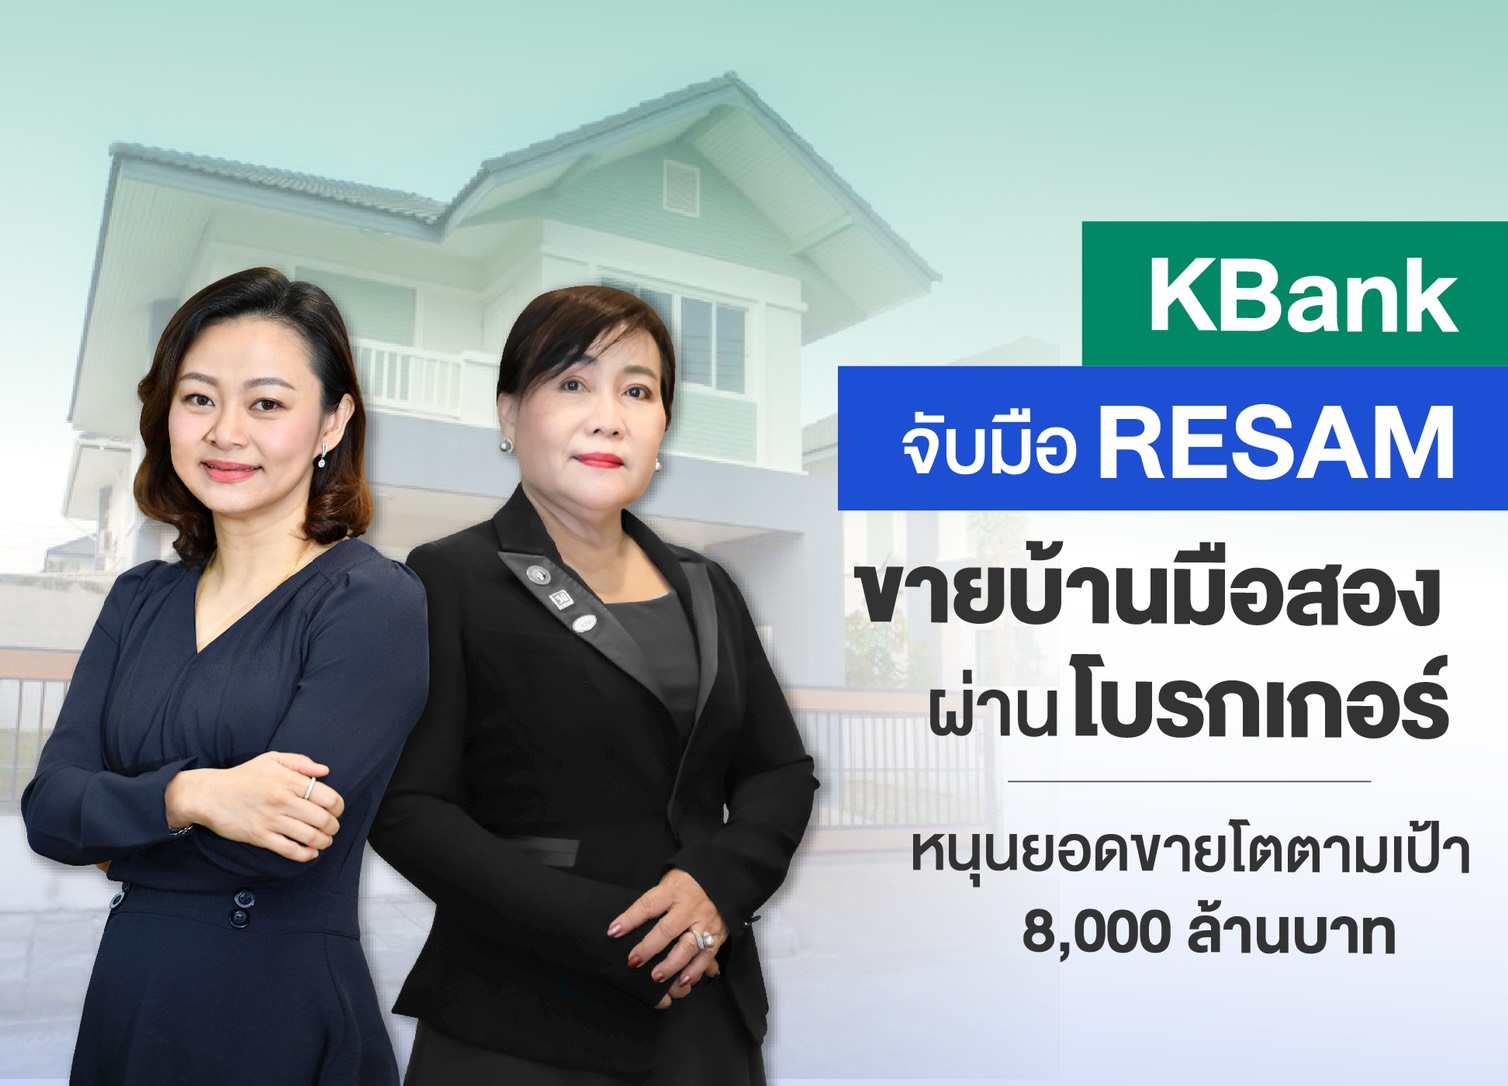 กสิกรไทยจับมือ RESAM ร่วมขายบ้านมือสองของธนาคาร ตั้งเป้าปีนี้ขาย 8,000 ล้านบาท